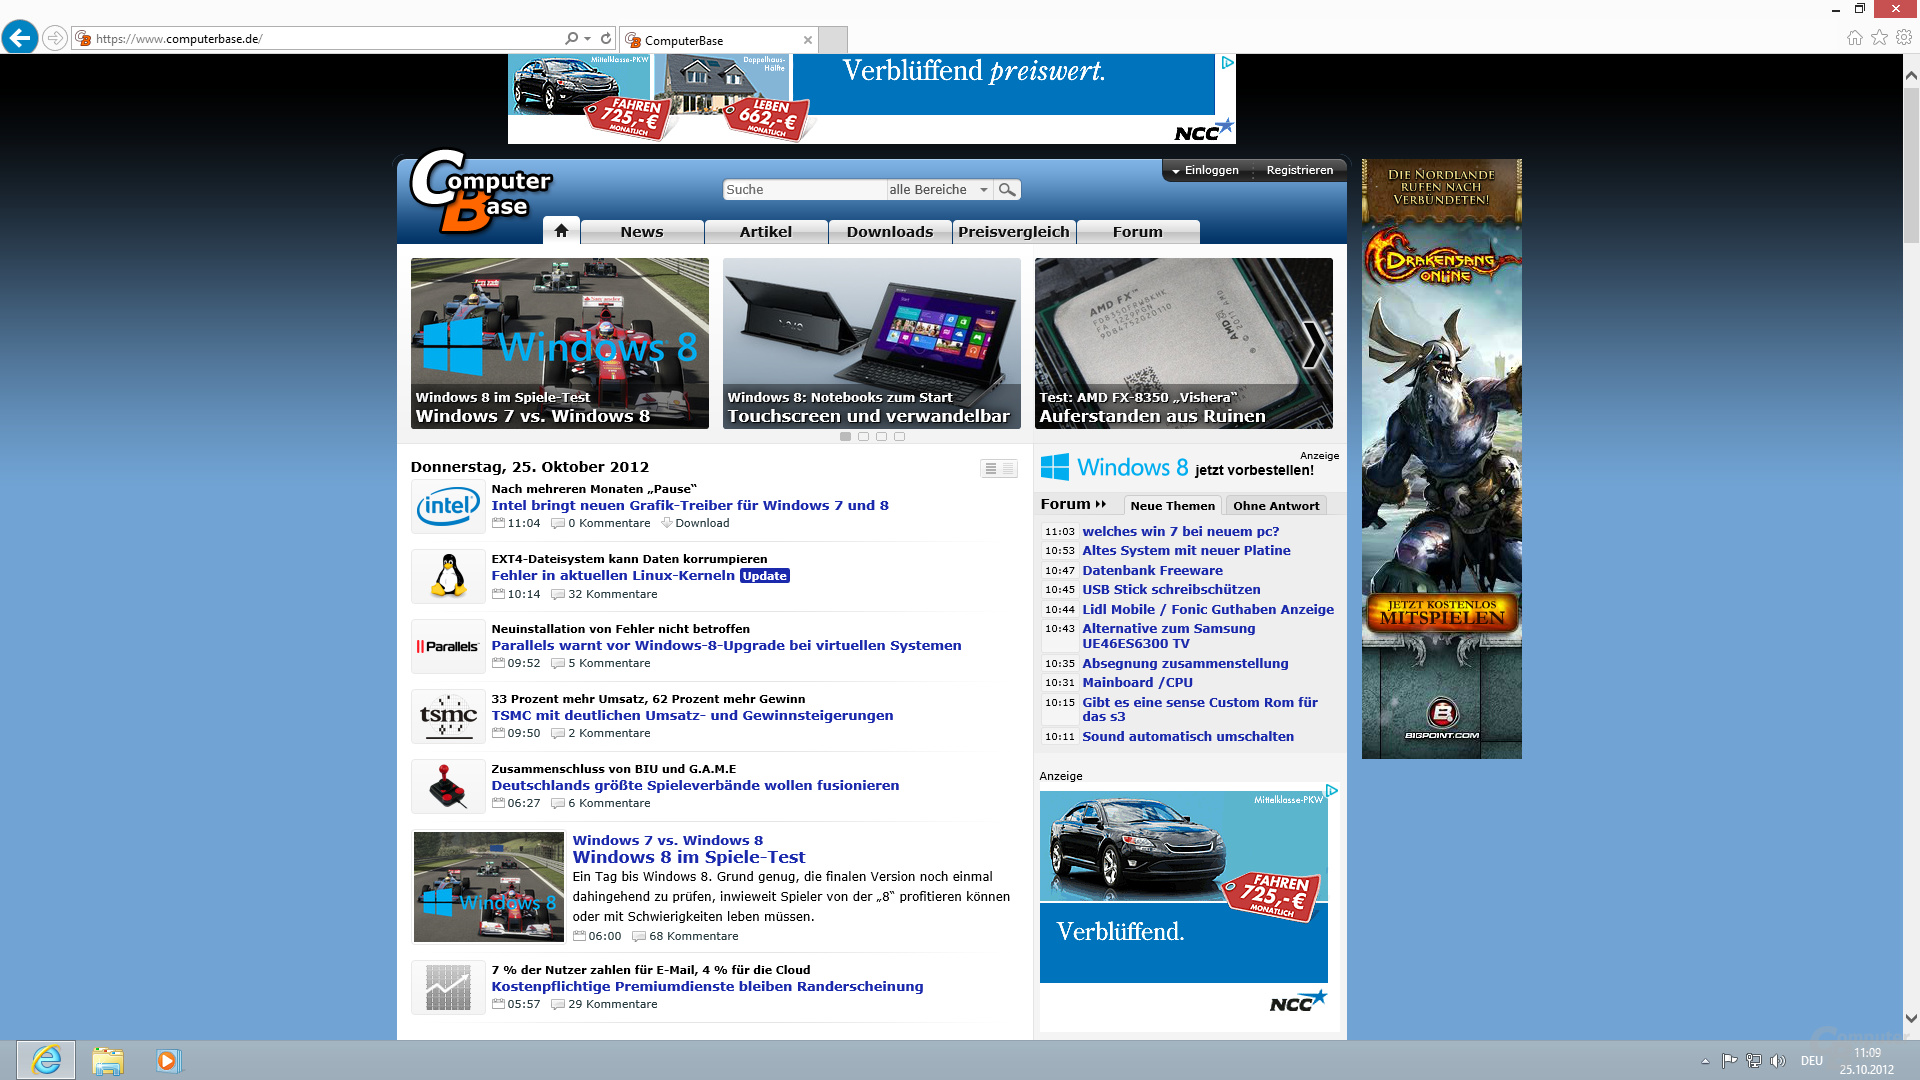 Desktop-Version des Internet Explorer 10